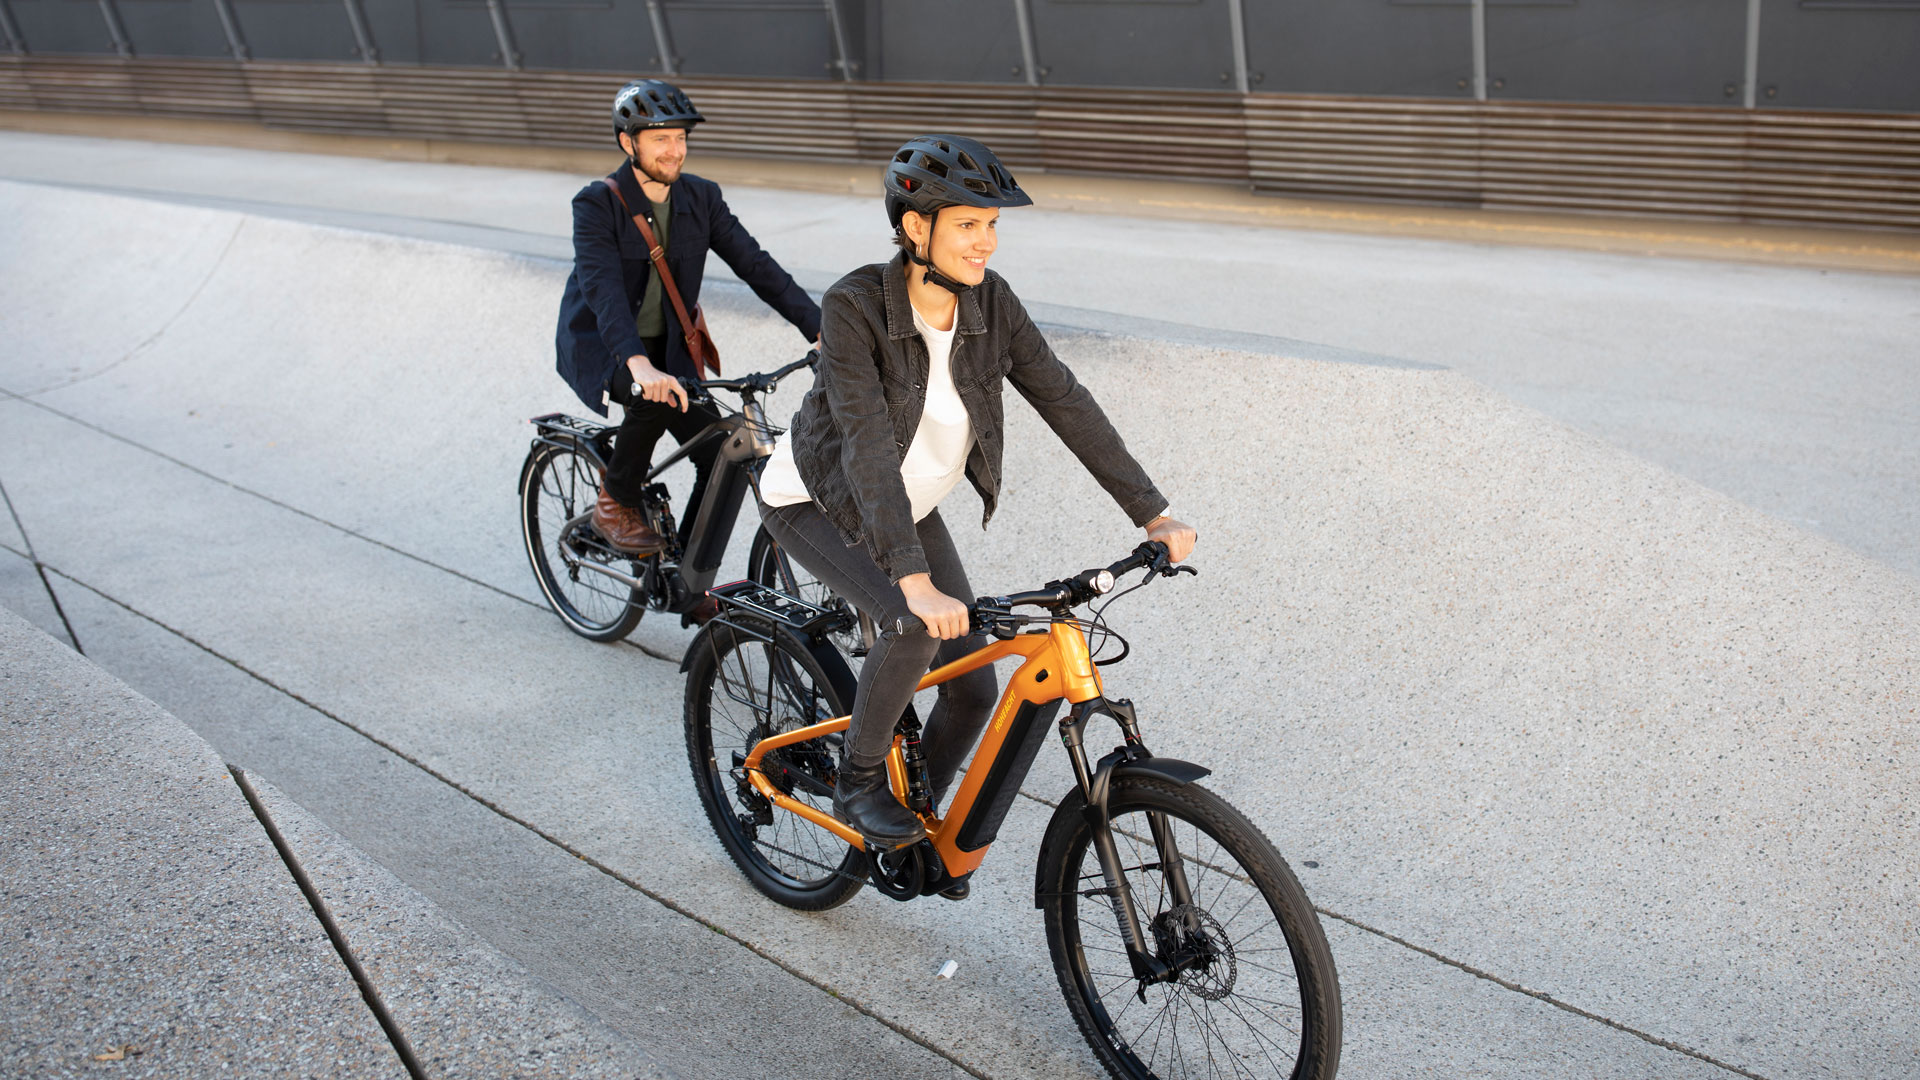 Nachhaltig, schnell und günstig: E-Bikes kommen vermehrt in der Postzustellung sowie bei Lieferdiensten zum Einsatz und wir können Gewiss sein, dass sich dieser Trend fortsetzen wird.